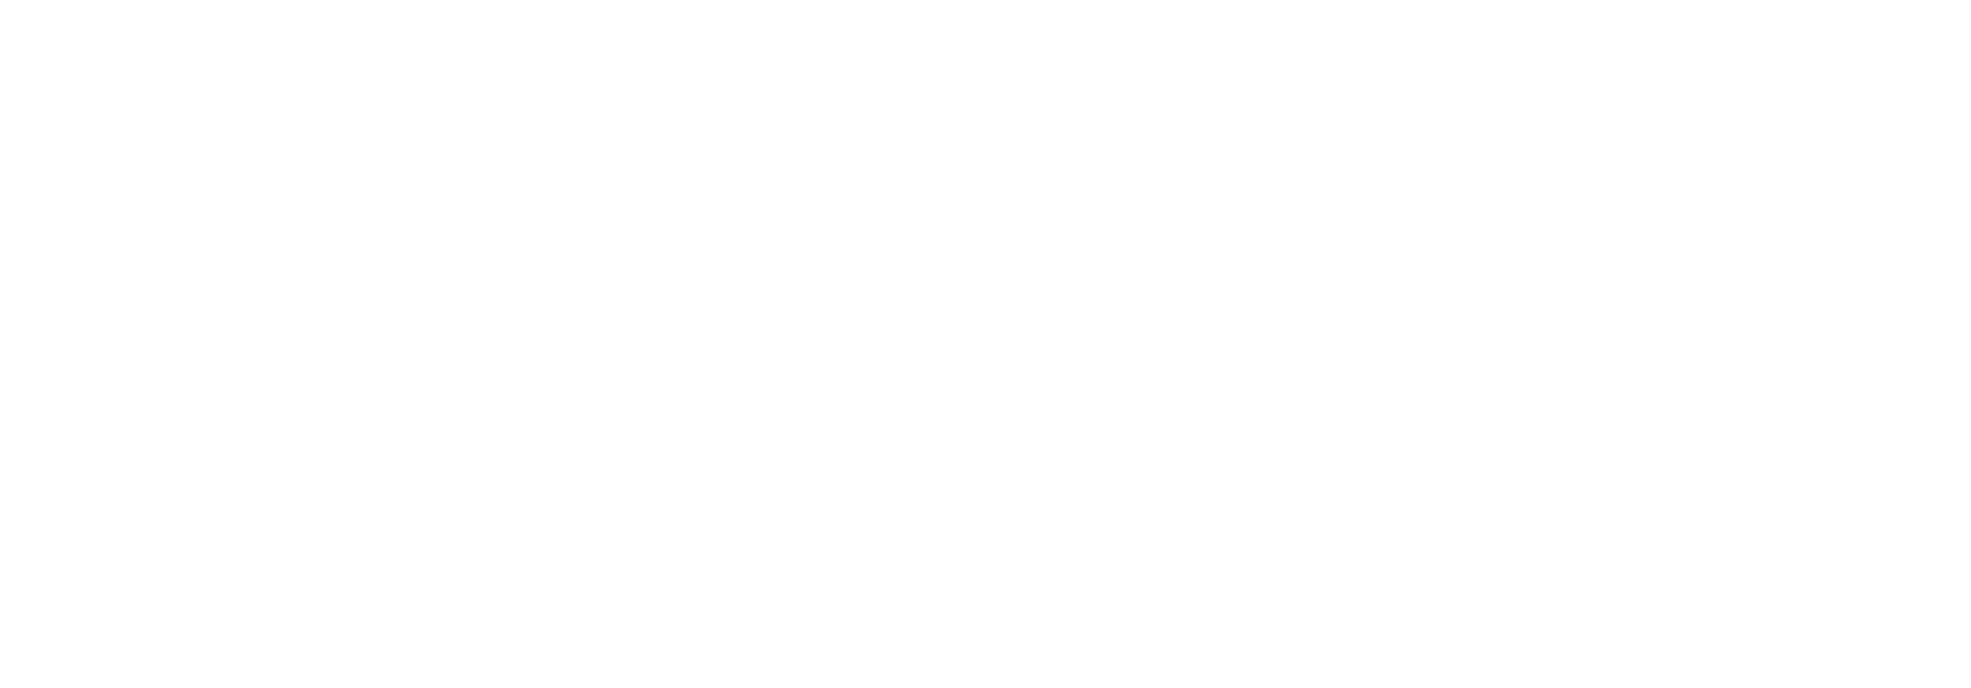 garnet captive logo white